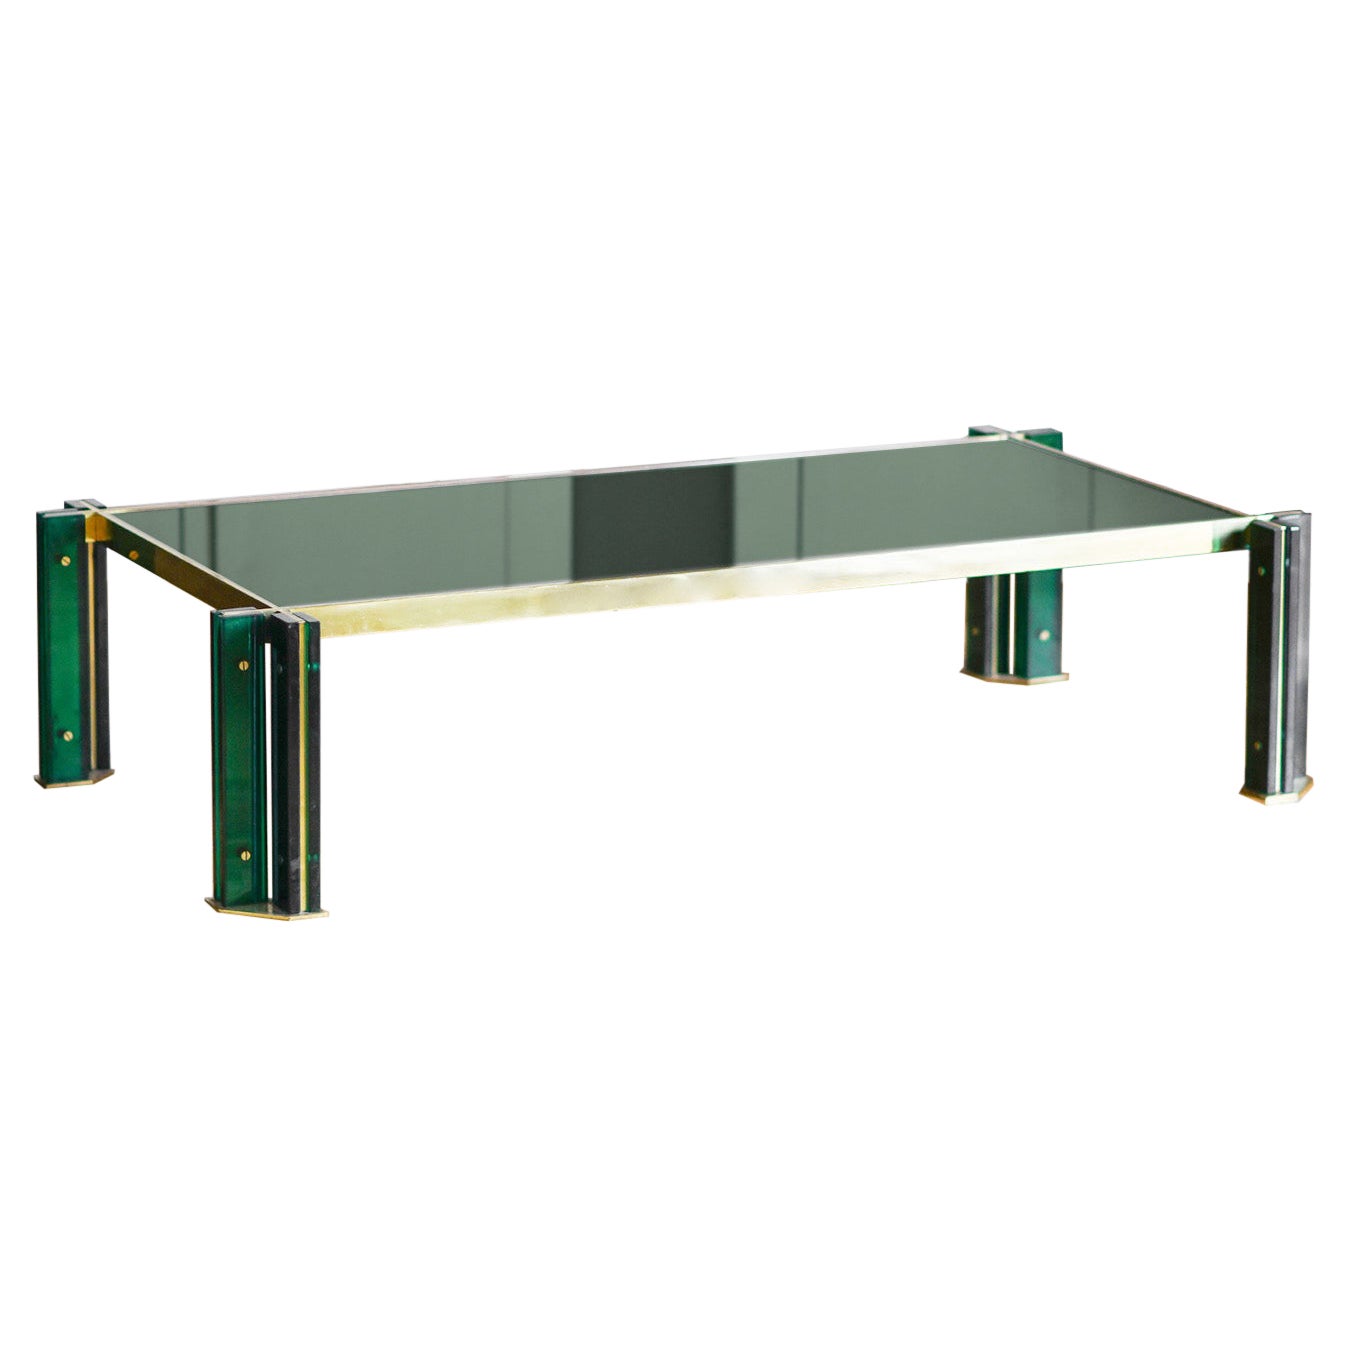 Table basse rectangulaire des années 1970 en laiton et verre vert.